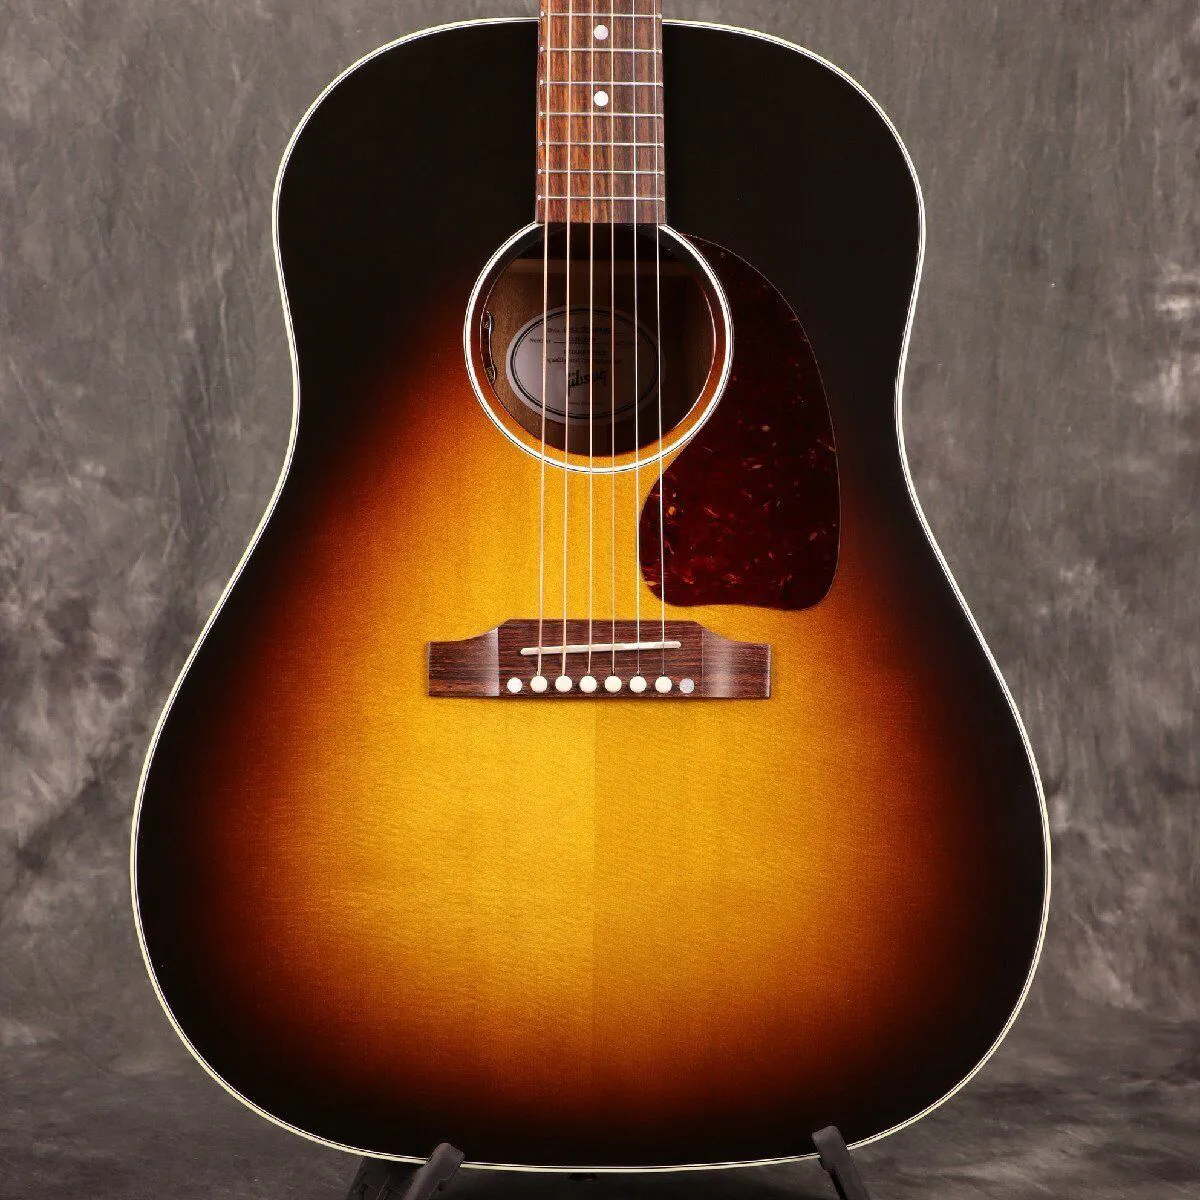 J45 Standard vs Vintage Sunburst S N 23263059 Acoustic Guitar